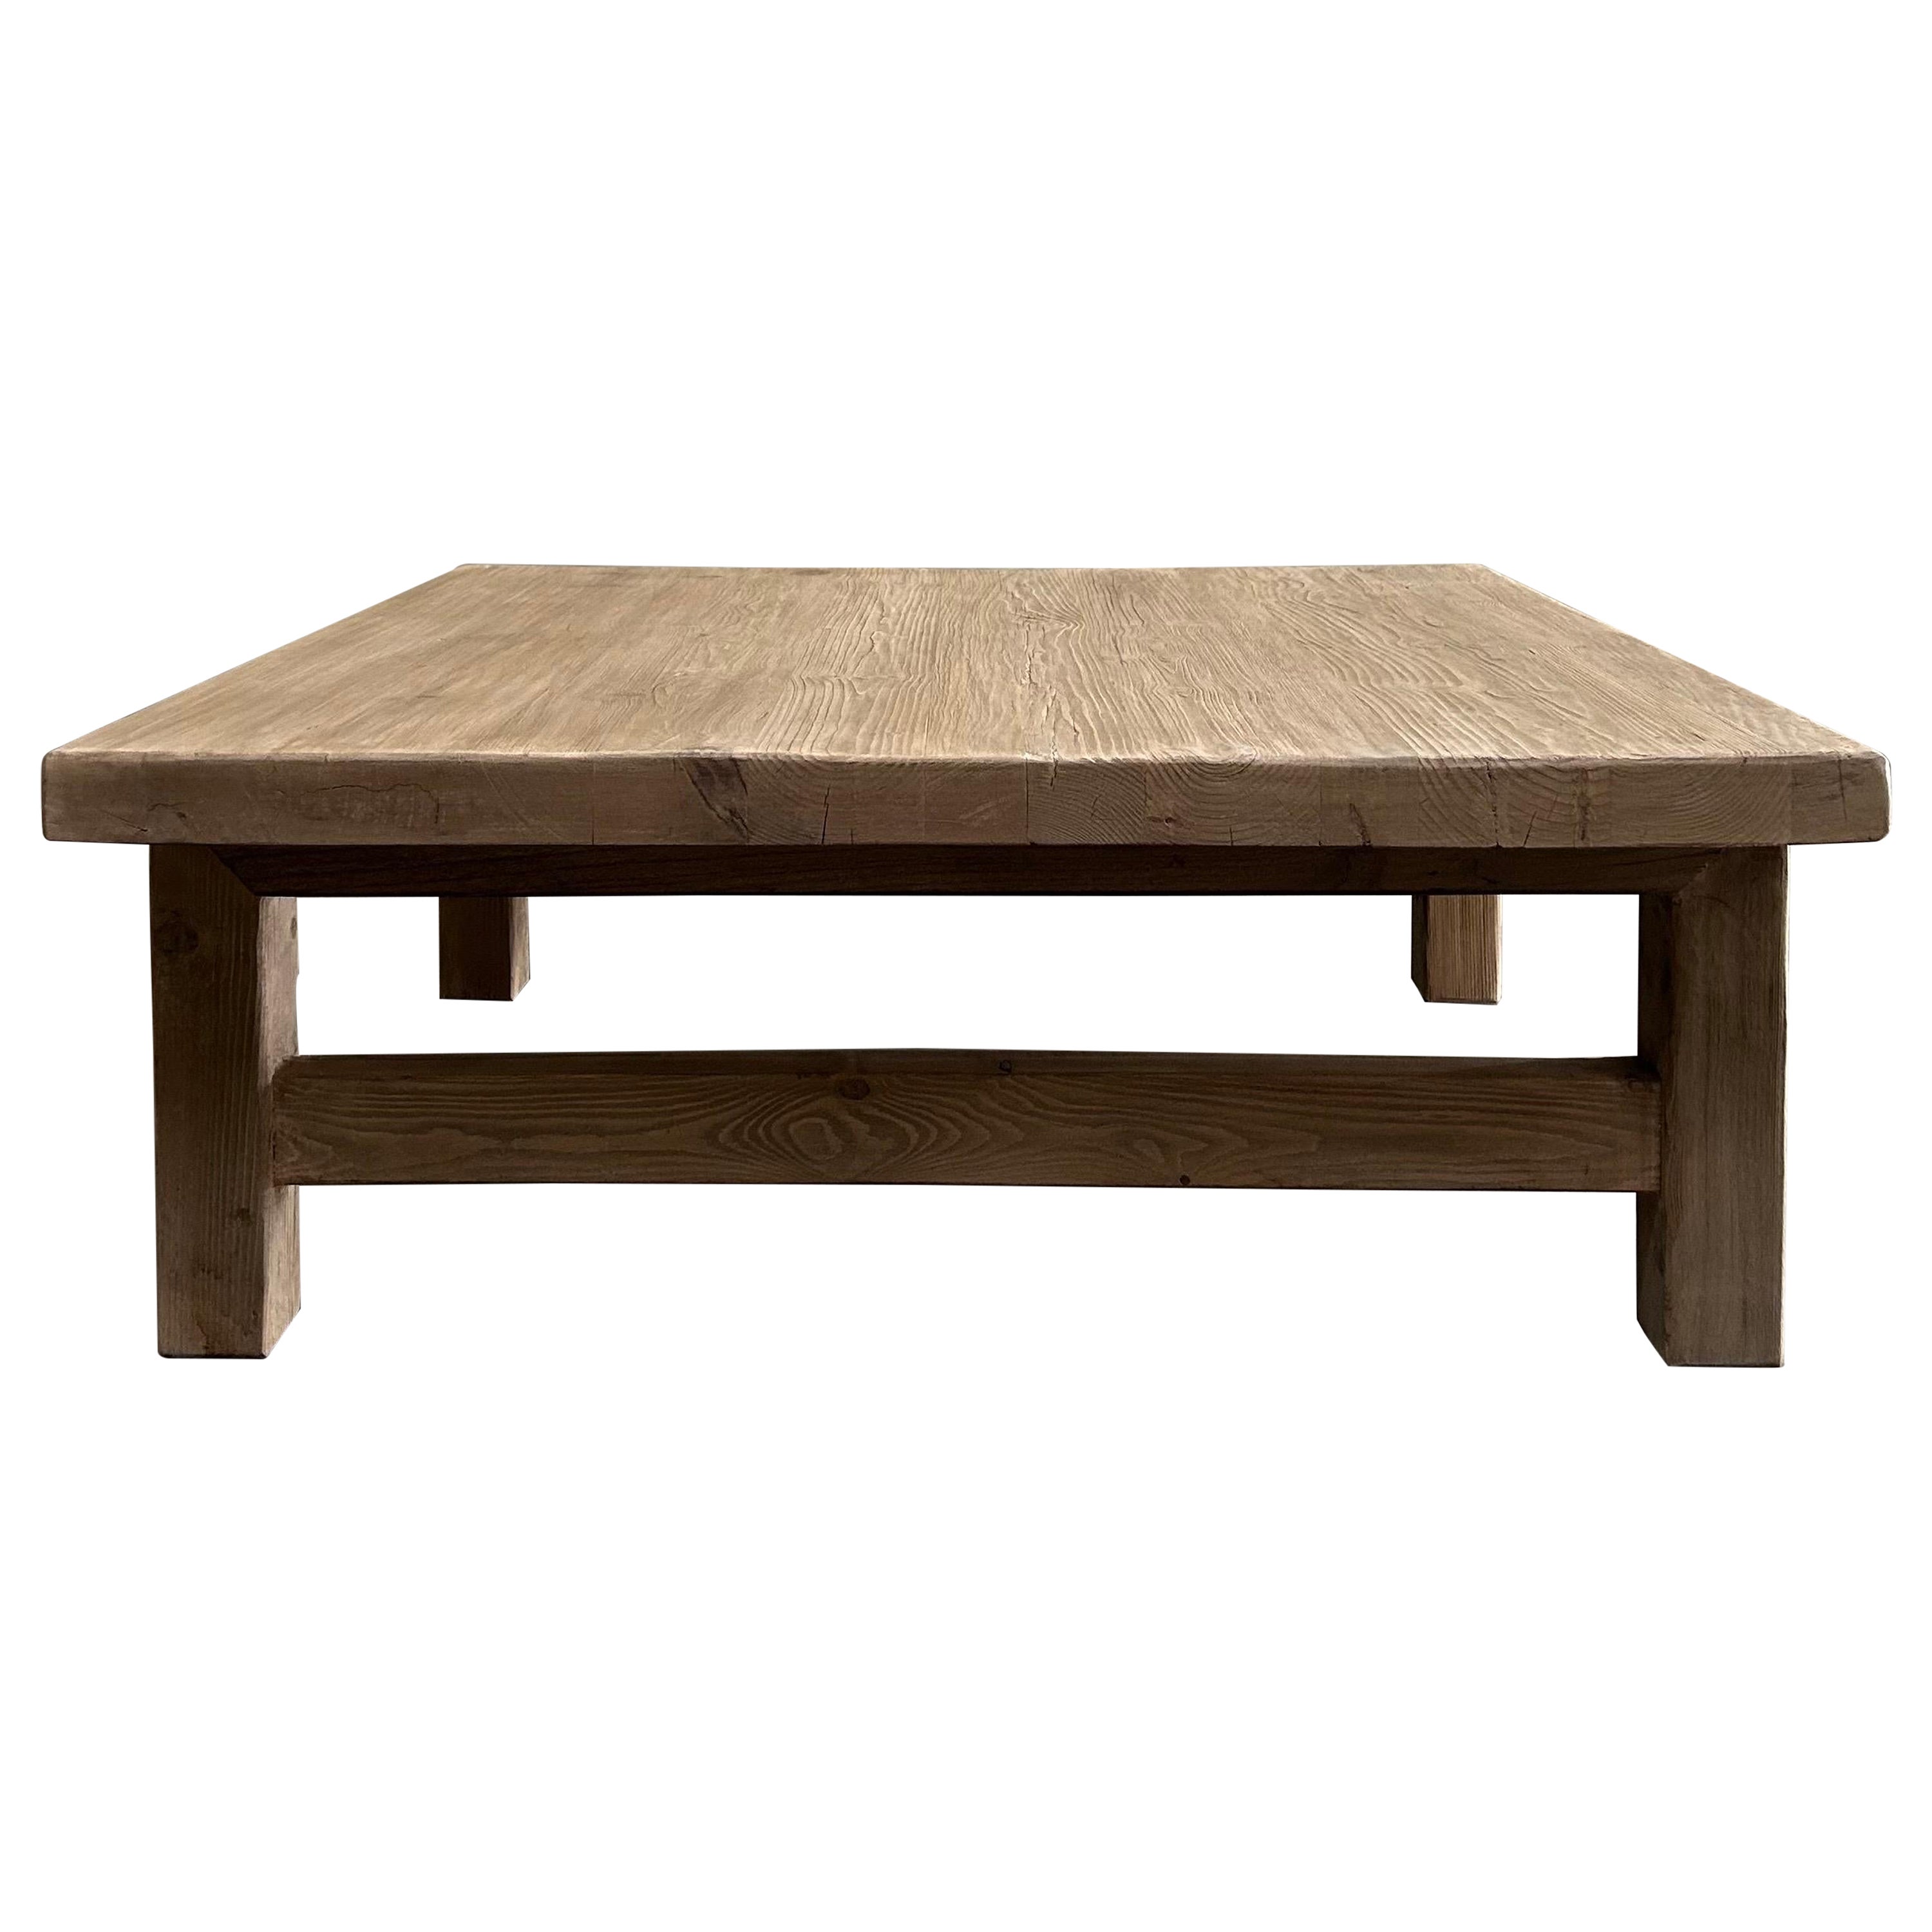 CUSTOM MADE Table basse carrée en bois d'orme récupéré, faite sur mesure